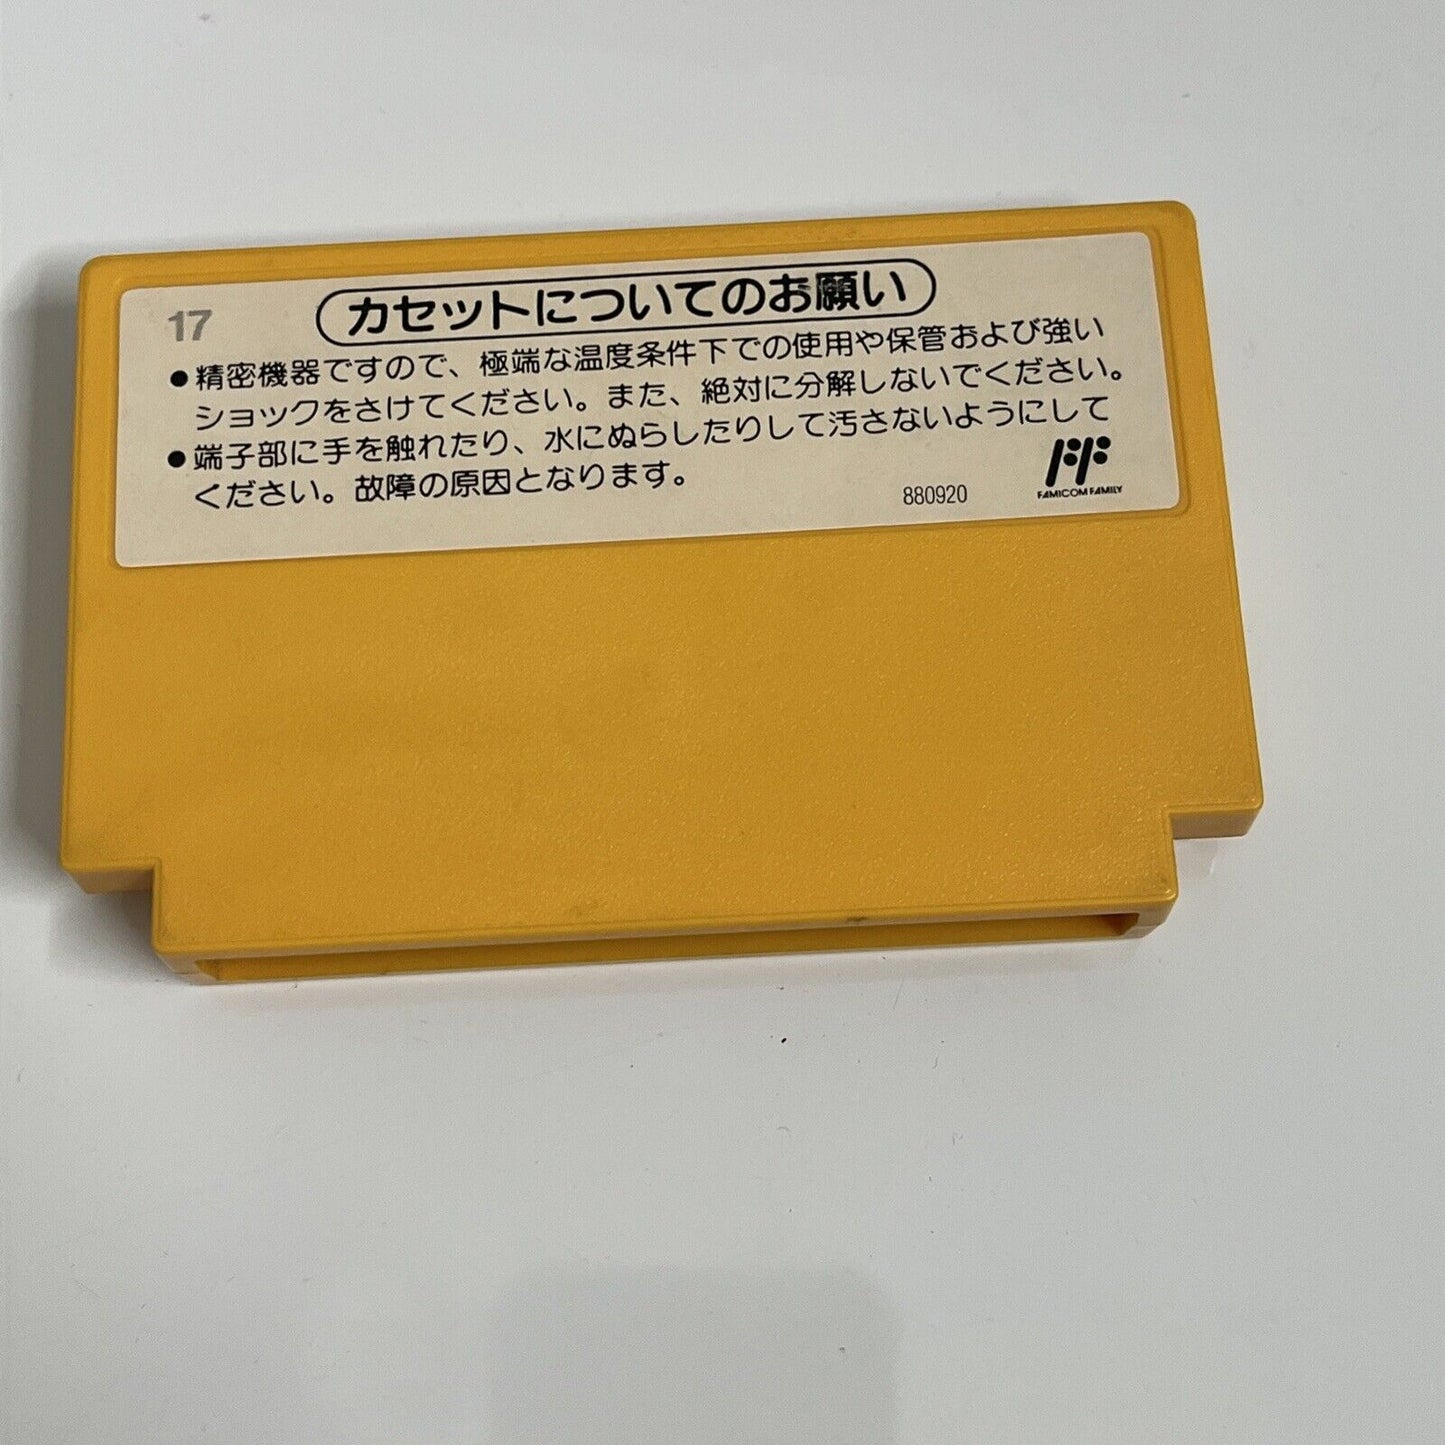 Super Mario Bros 1 + 3 - Nintendo Famicom NES NTSC-J JAPAN 1988 Platformer Game